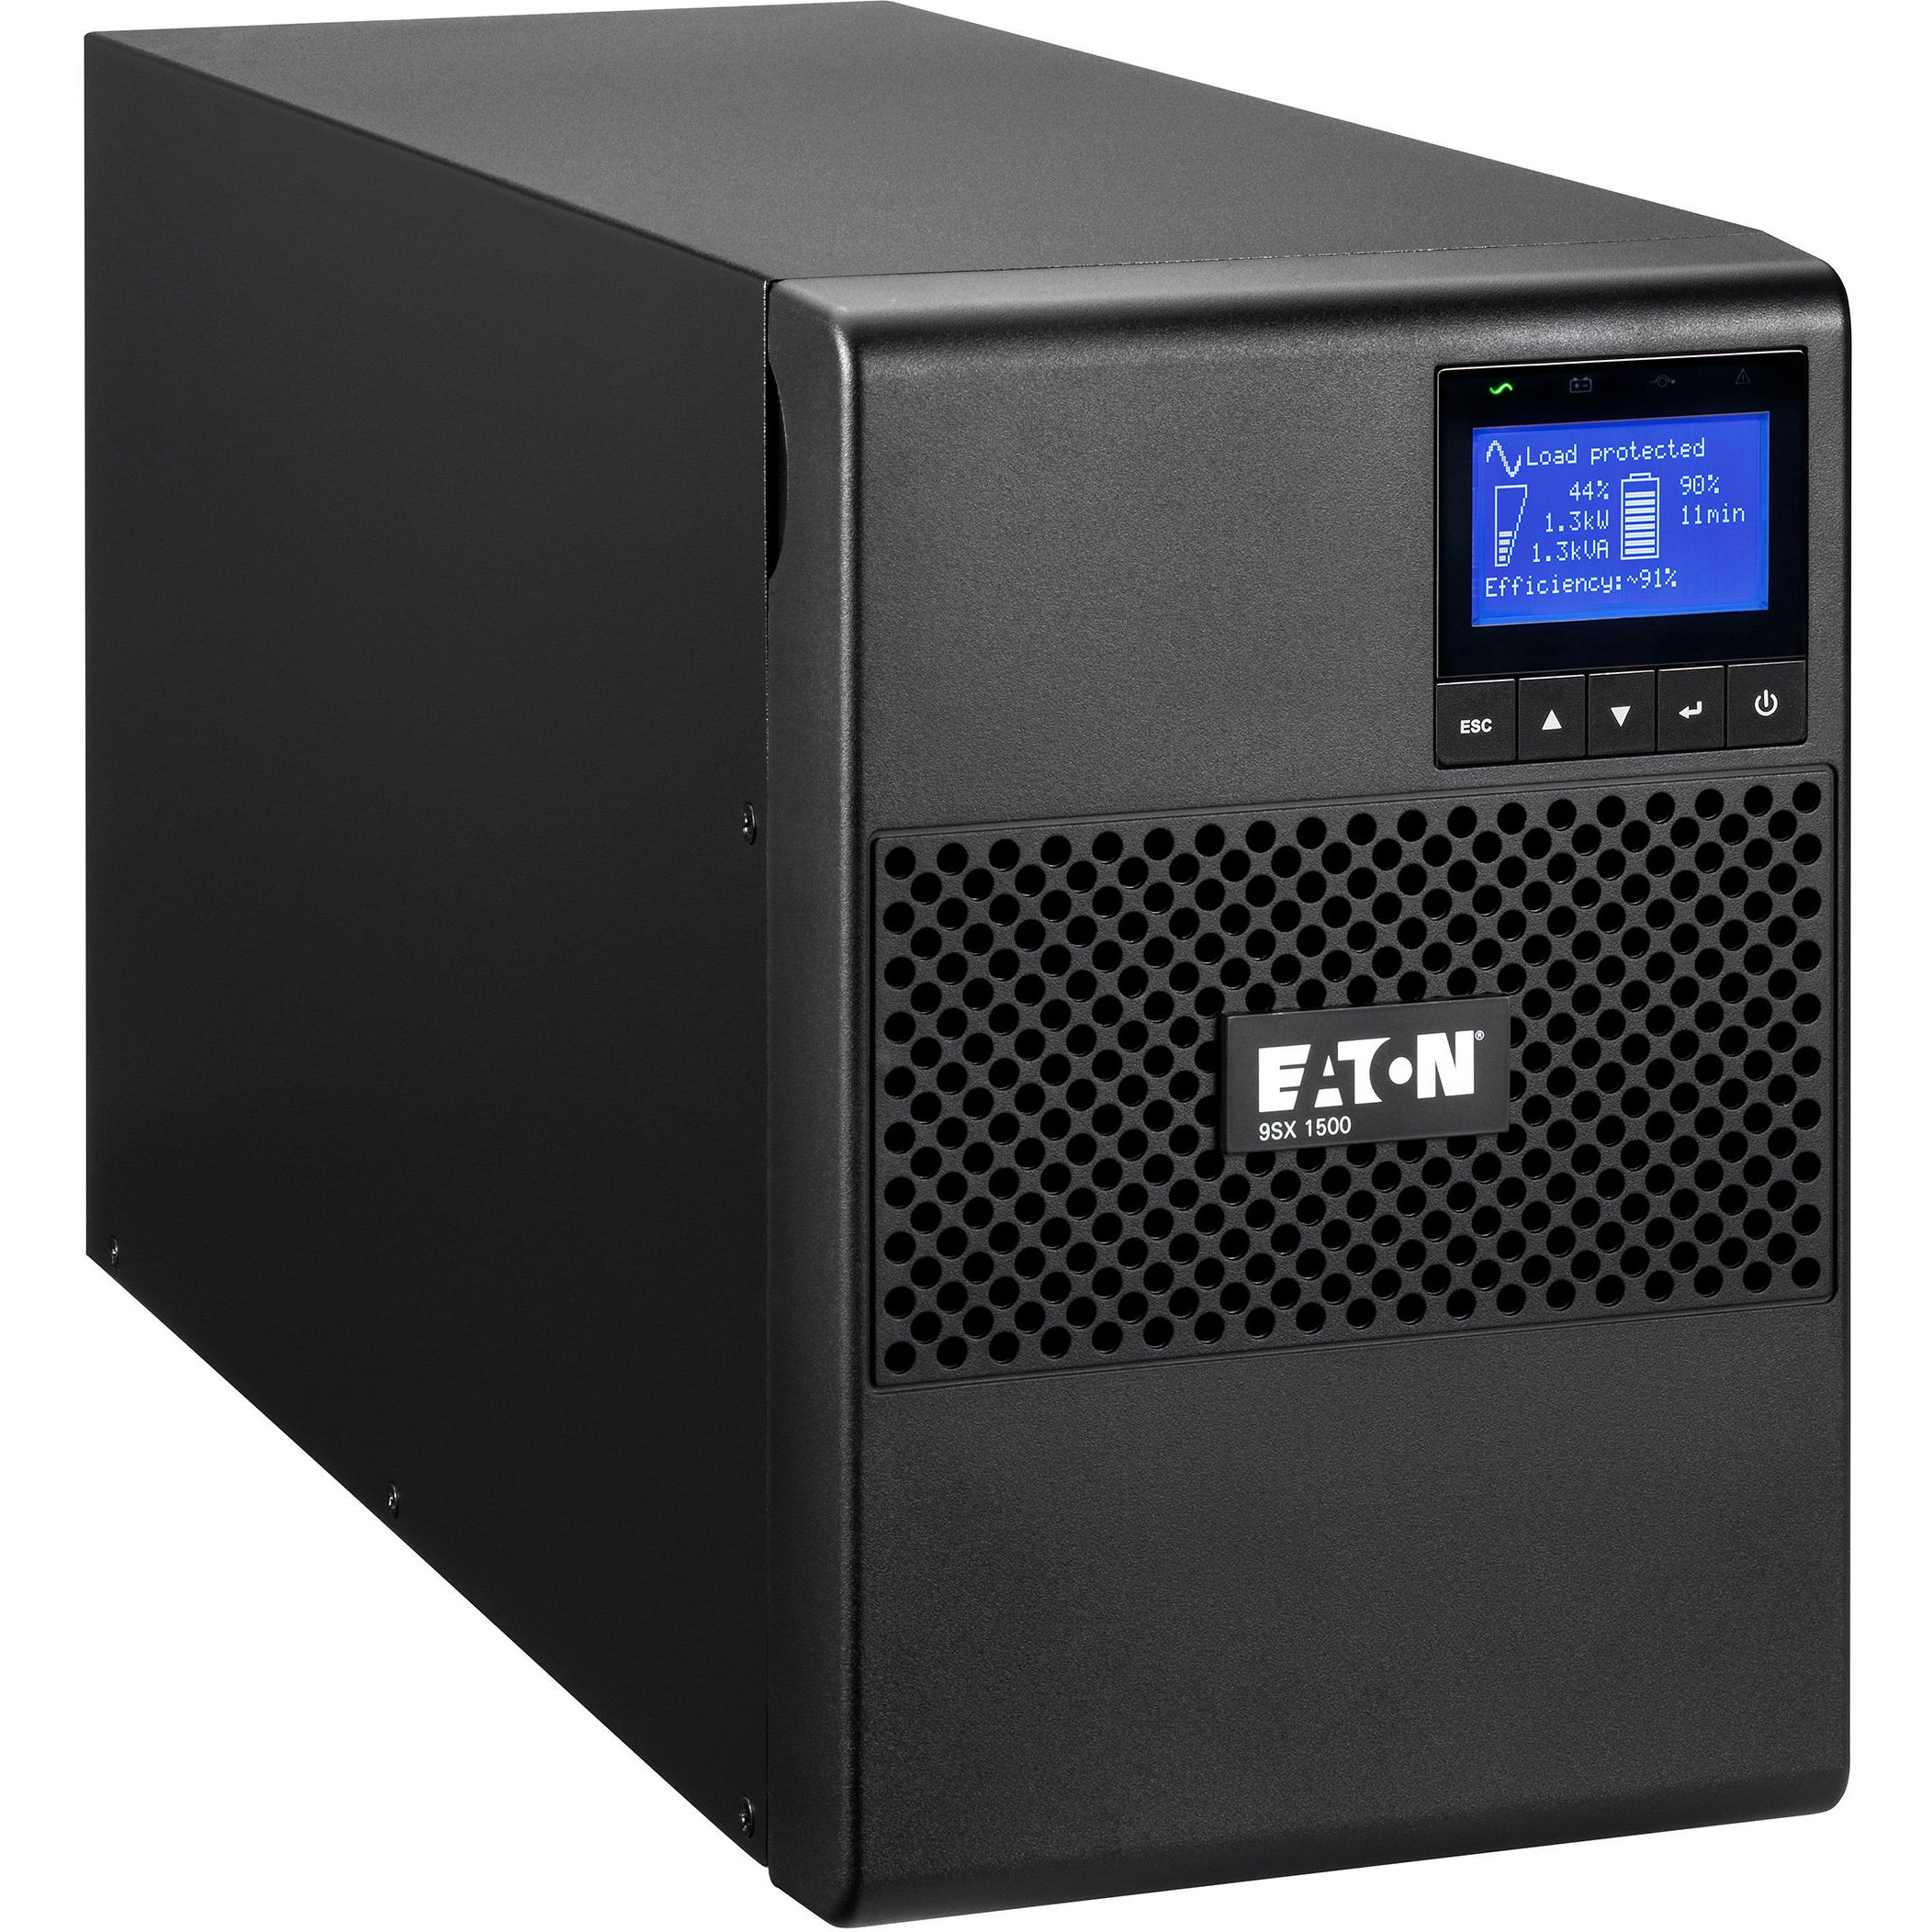 ИБП Eaton 9SX, 1500VA/1350W, LCD, USB, RS232, 6xC13 (9SX1500I) фото 1